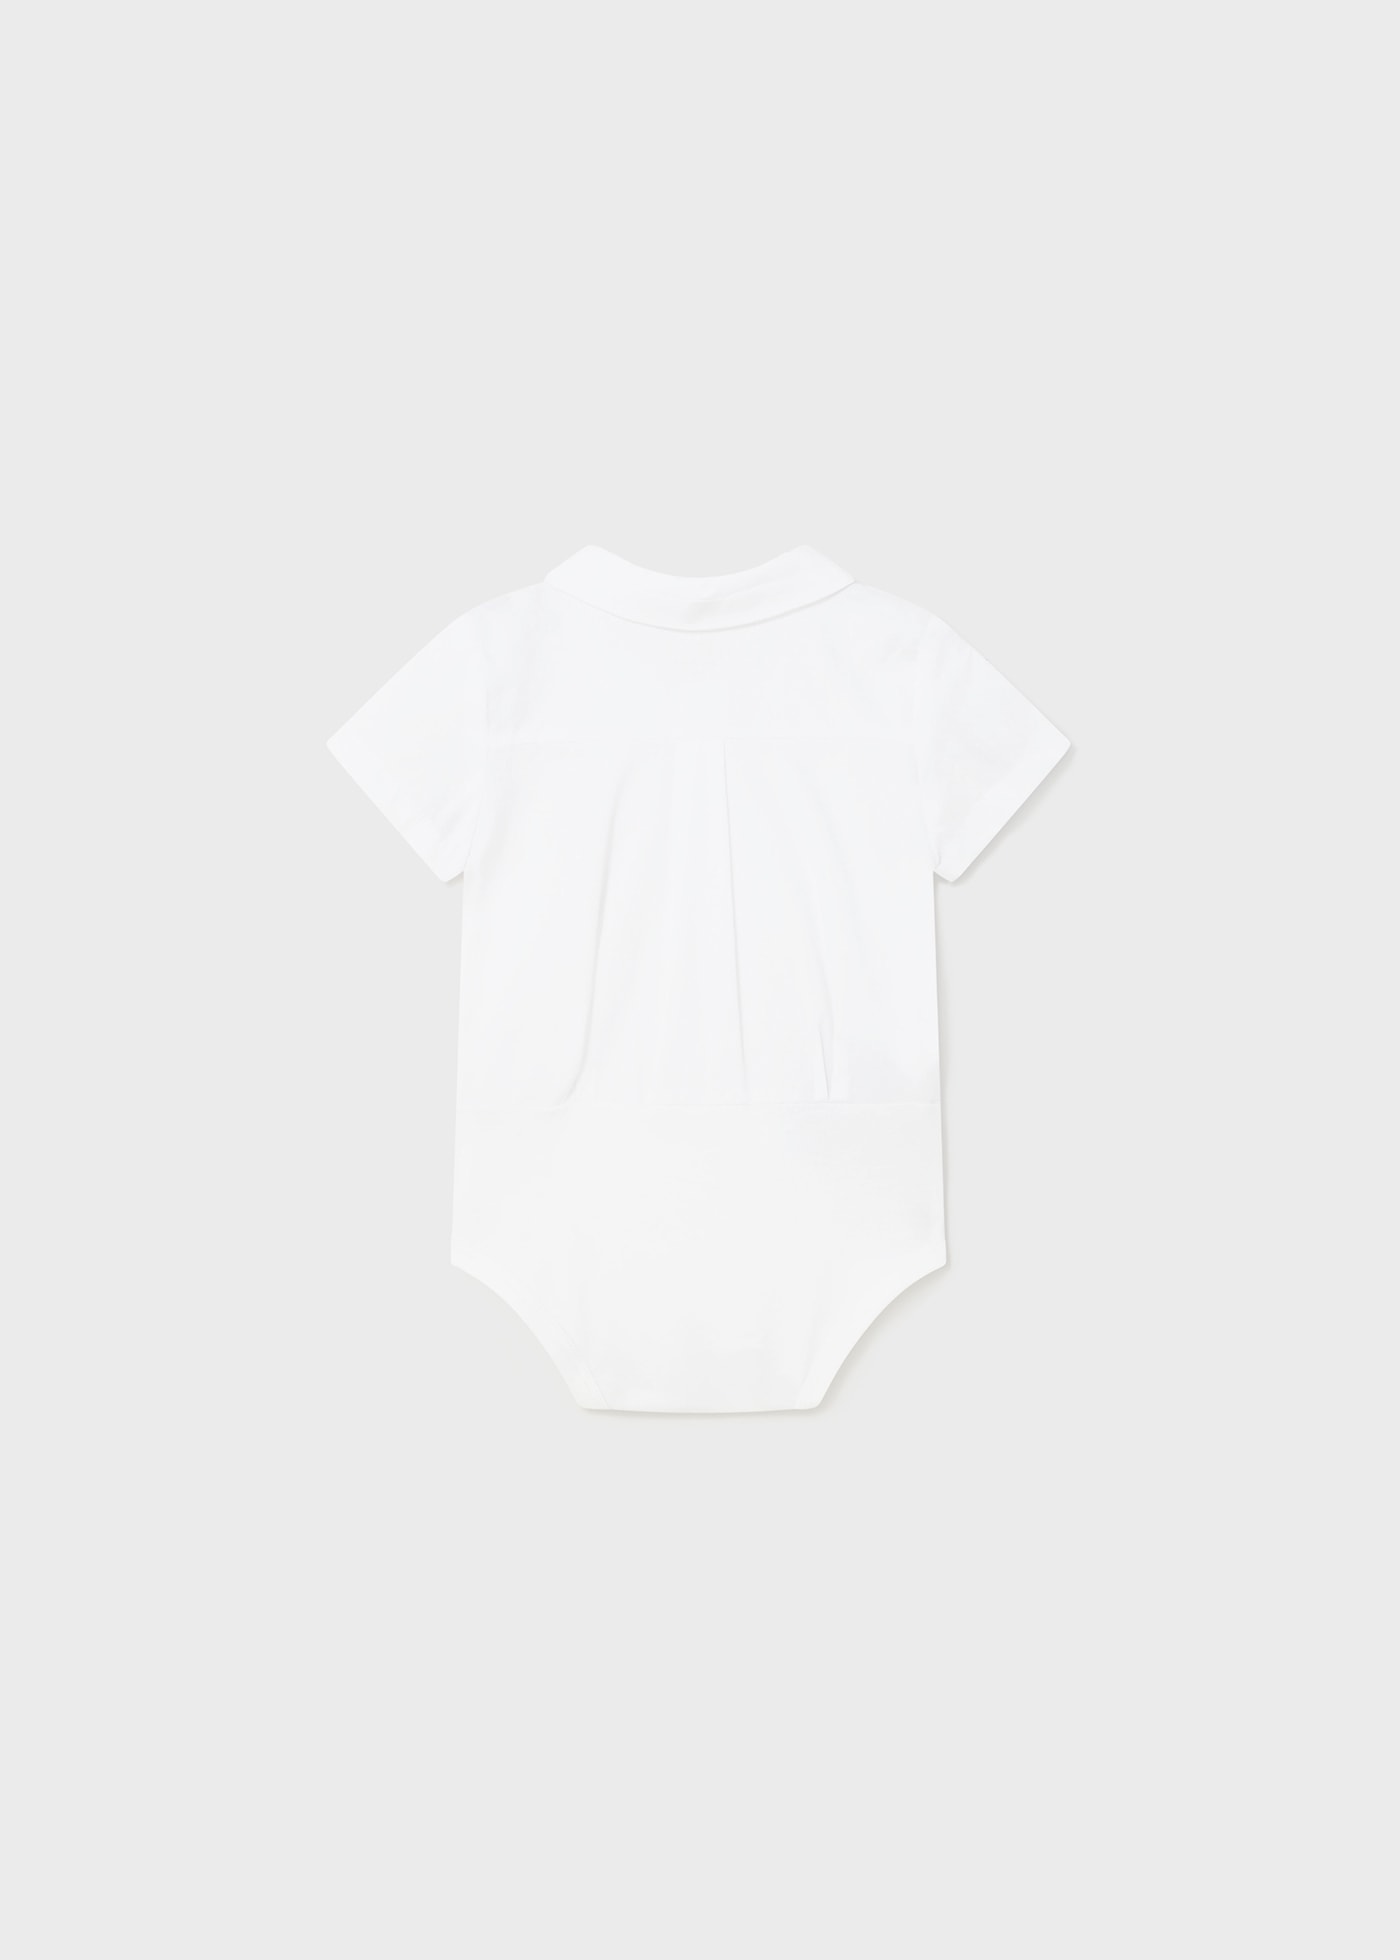 Комбинирано боди тип риза за новородено